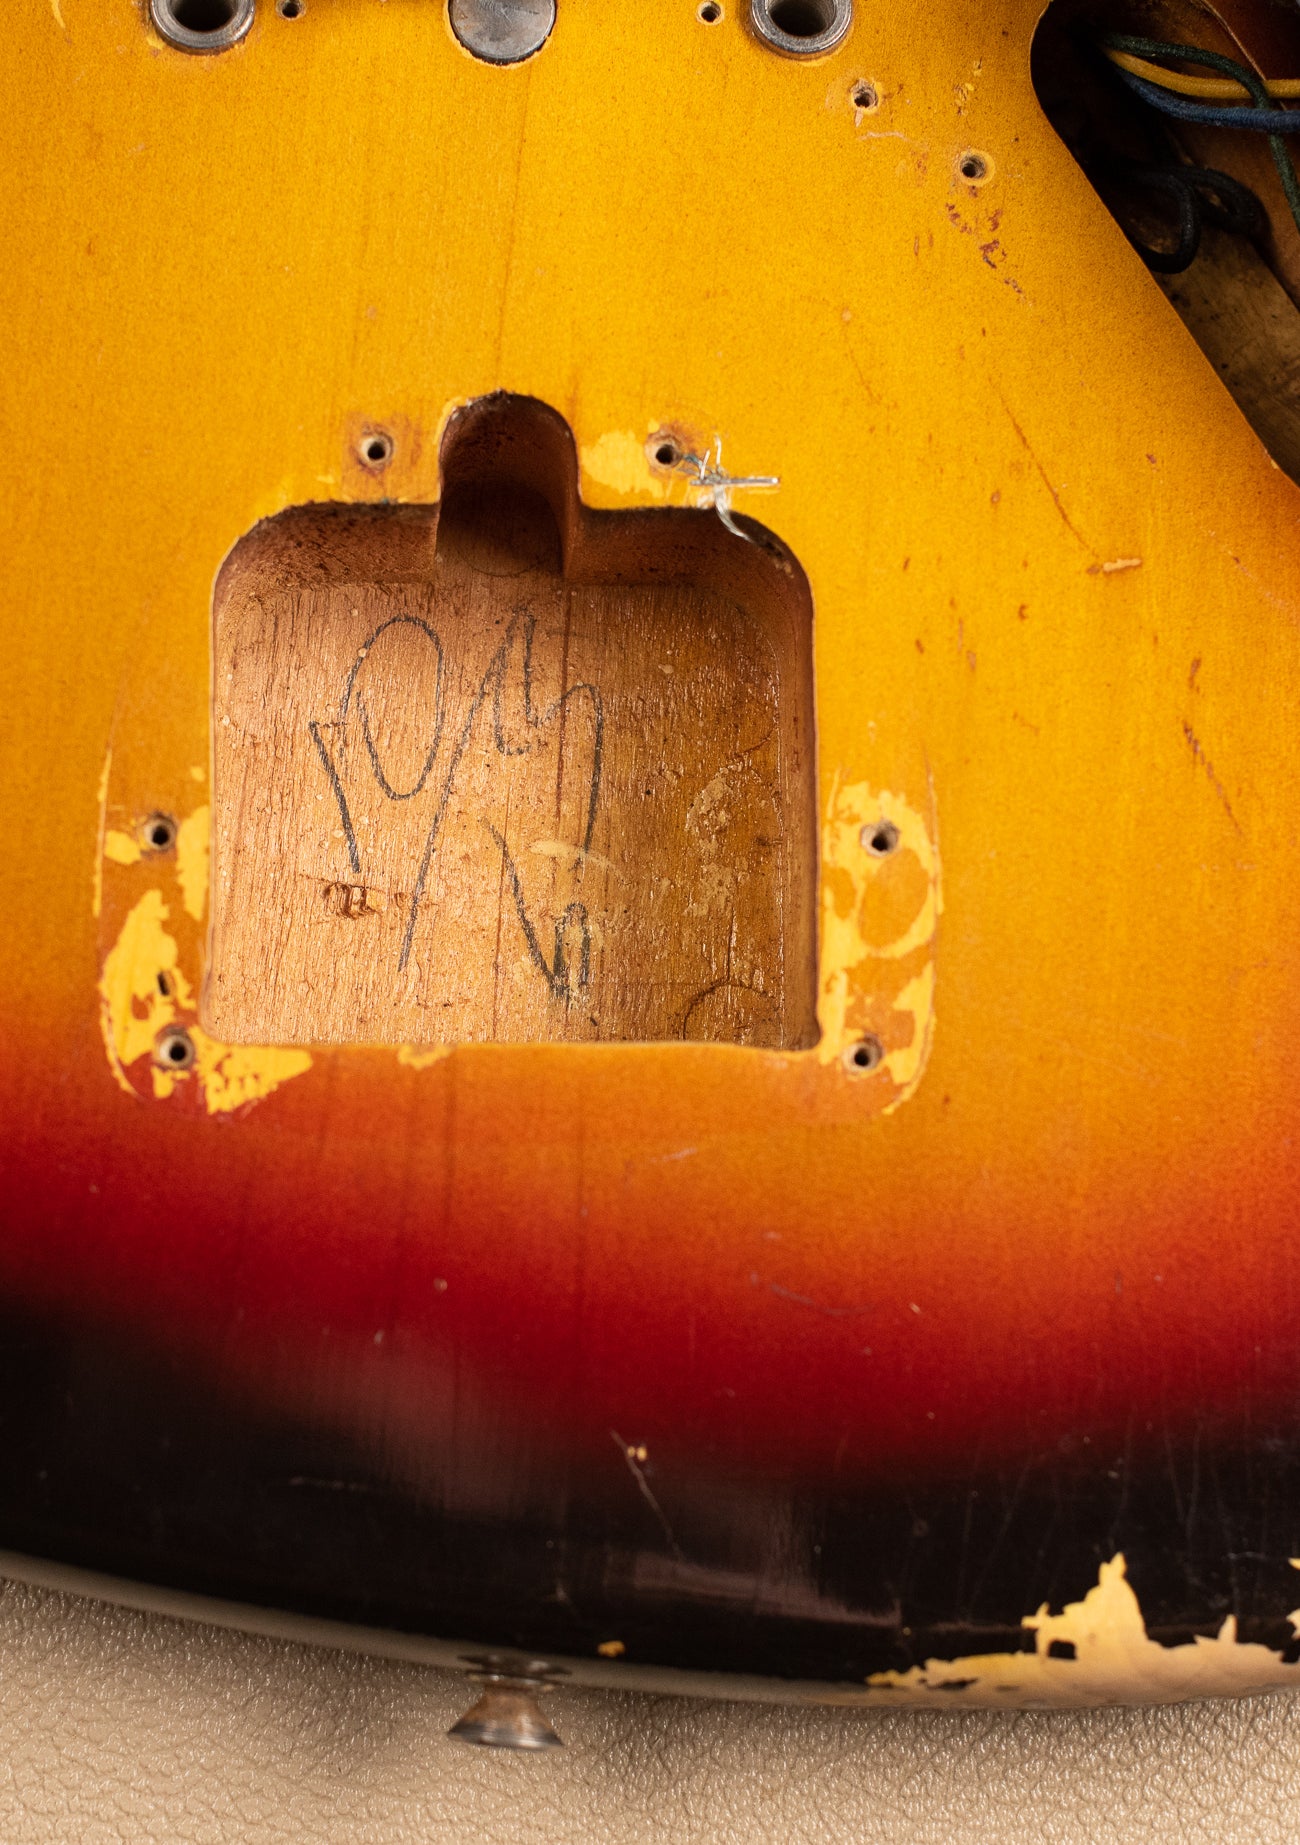 10/63 pencil date, tremolo cavity, Vintage 1963 Fender Jaguar Sunburst guitar